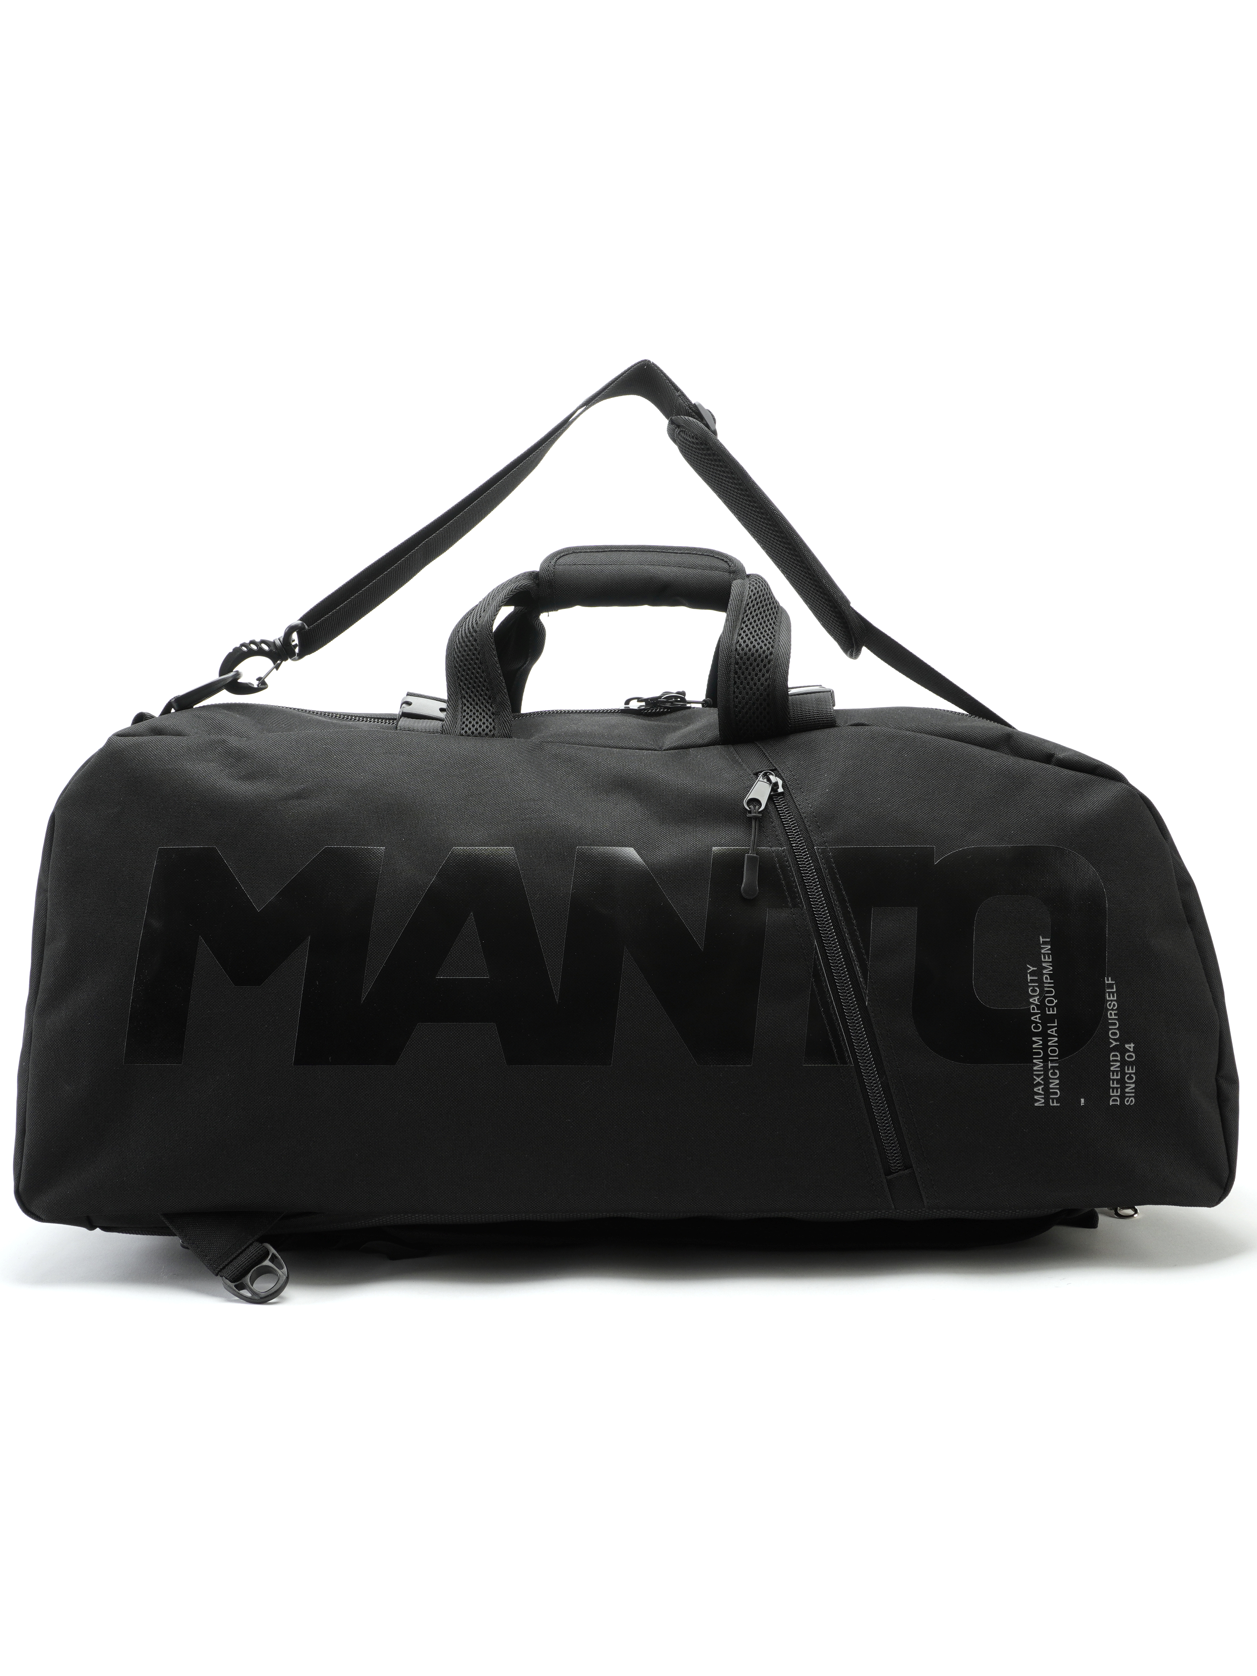 MANTO sporttasche / rucksack BLACKOUT